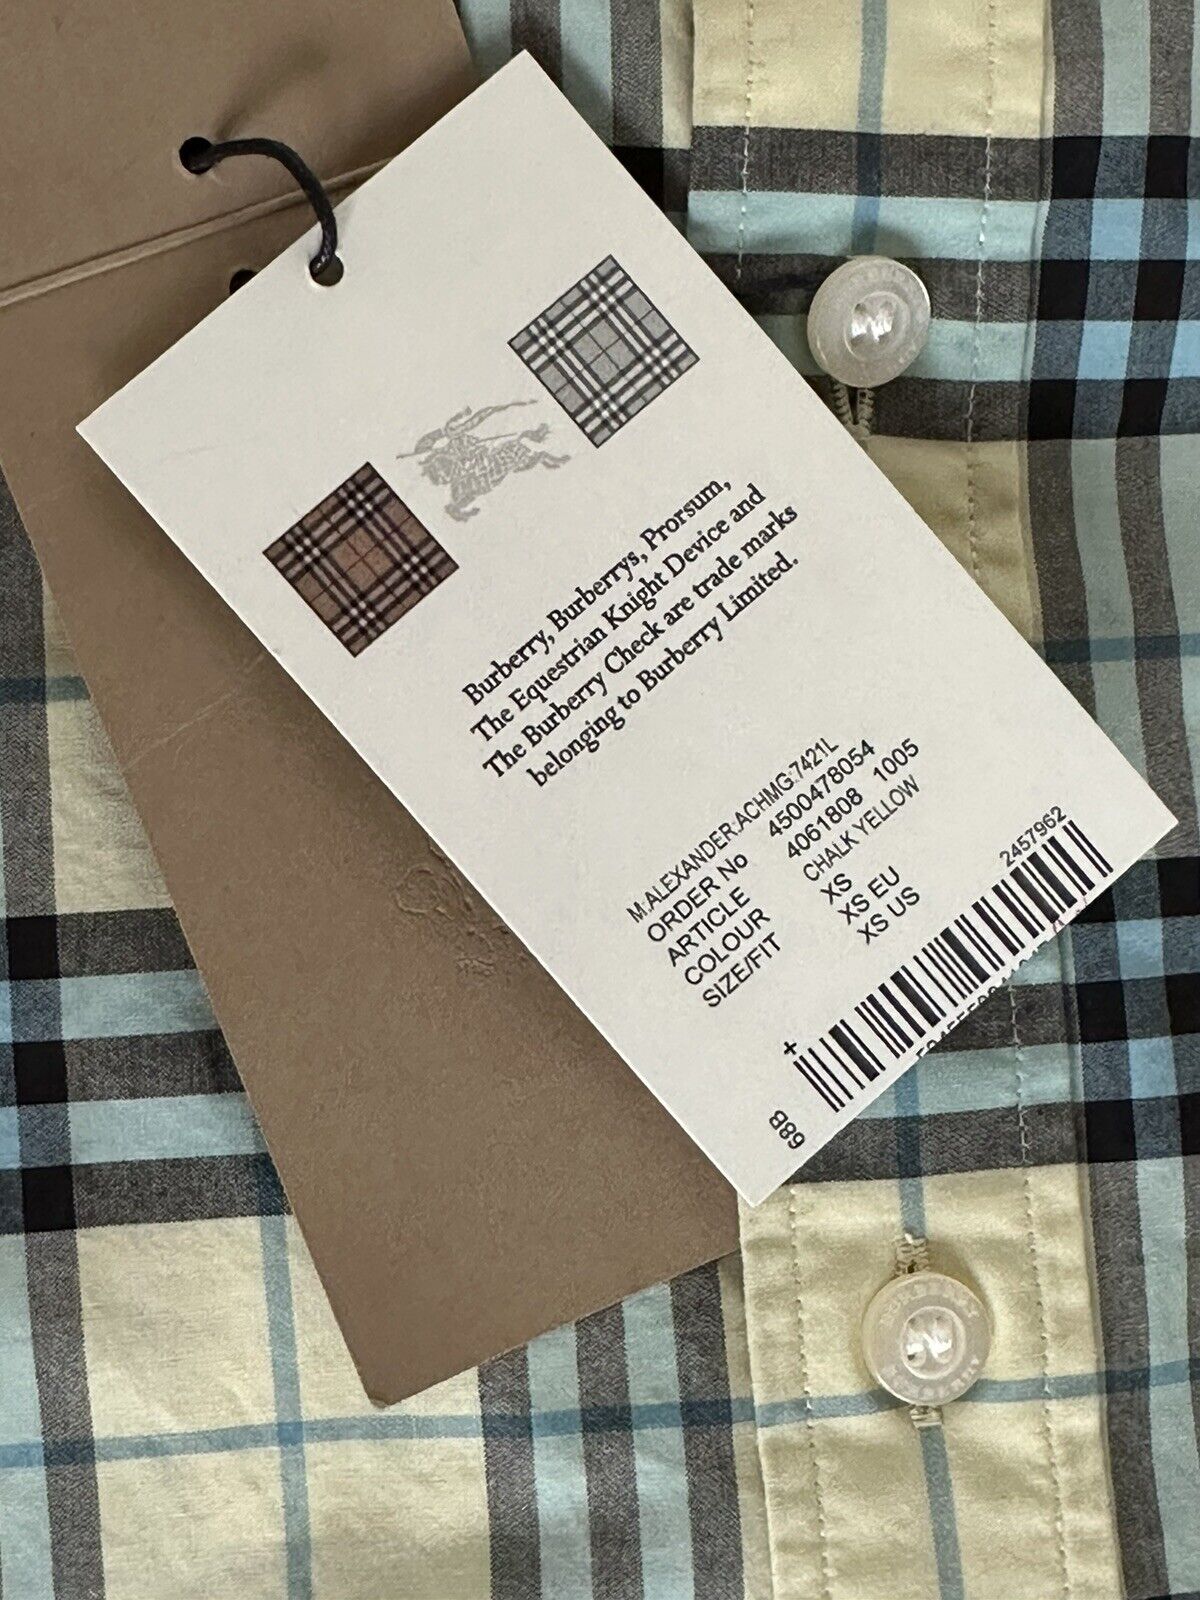 Мужская хлопковая рубашка на пуговицах на пуговицах мелового цвета Burberry Brit стоимостью 330 долларов США 4061808